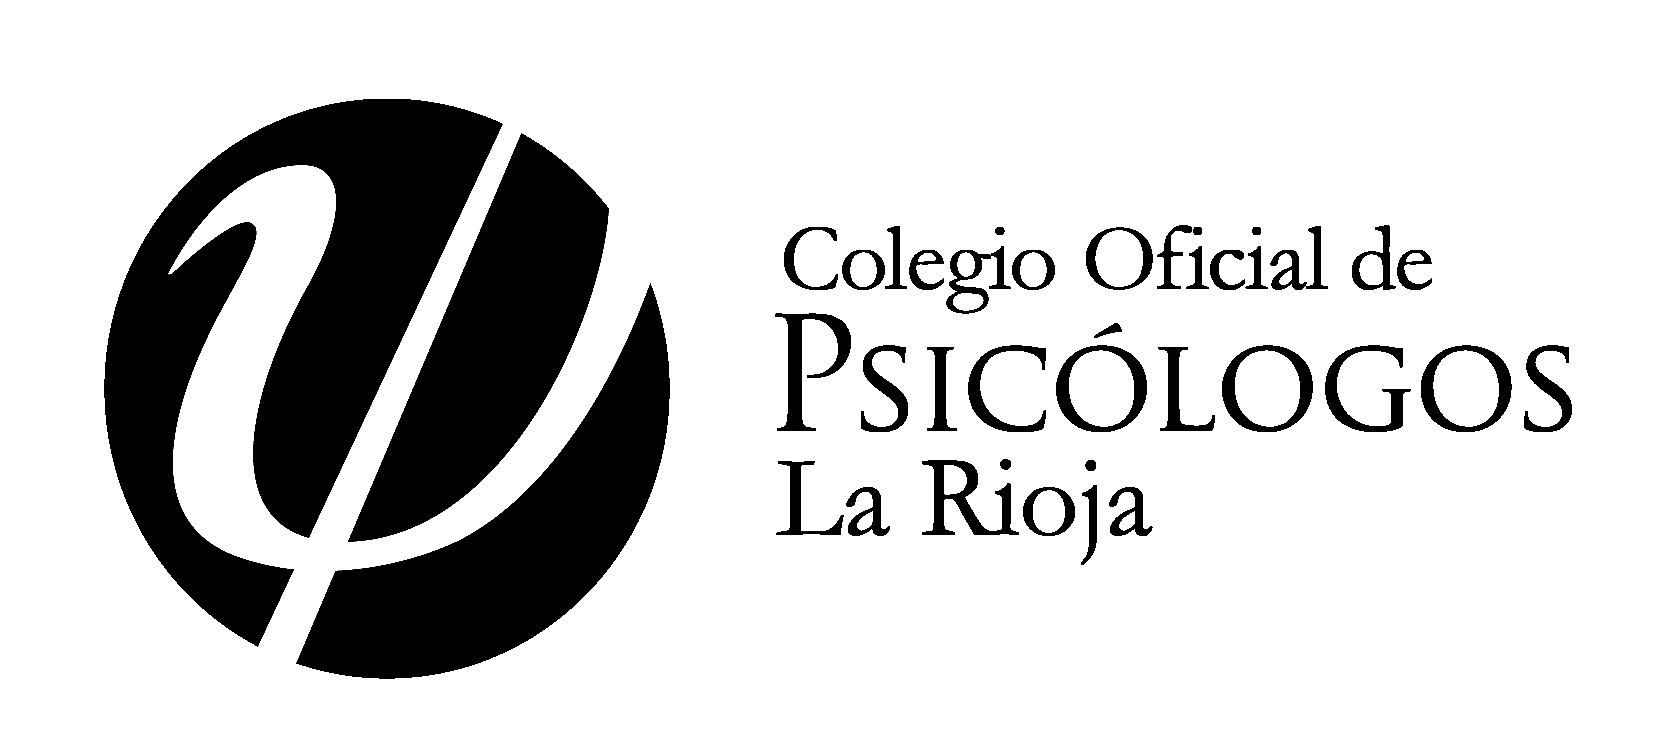 Colegio Oficial de Psicología de la Rioja